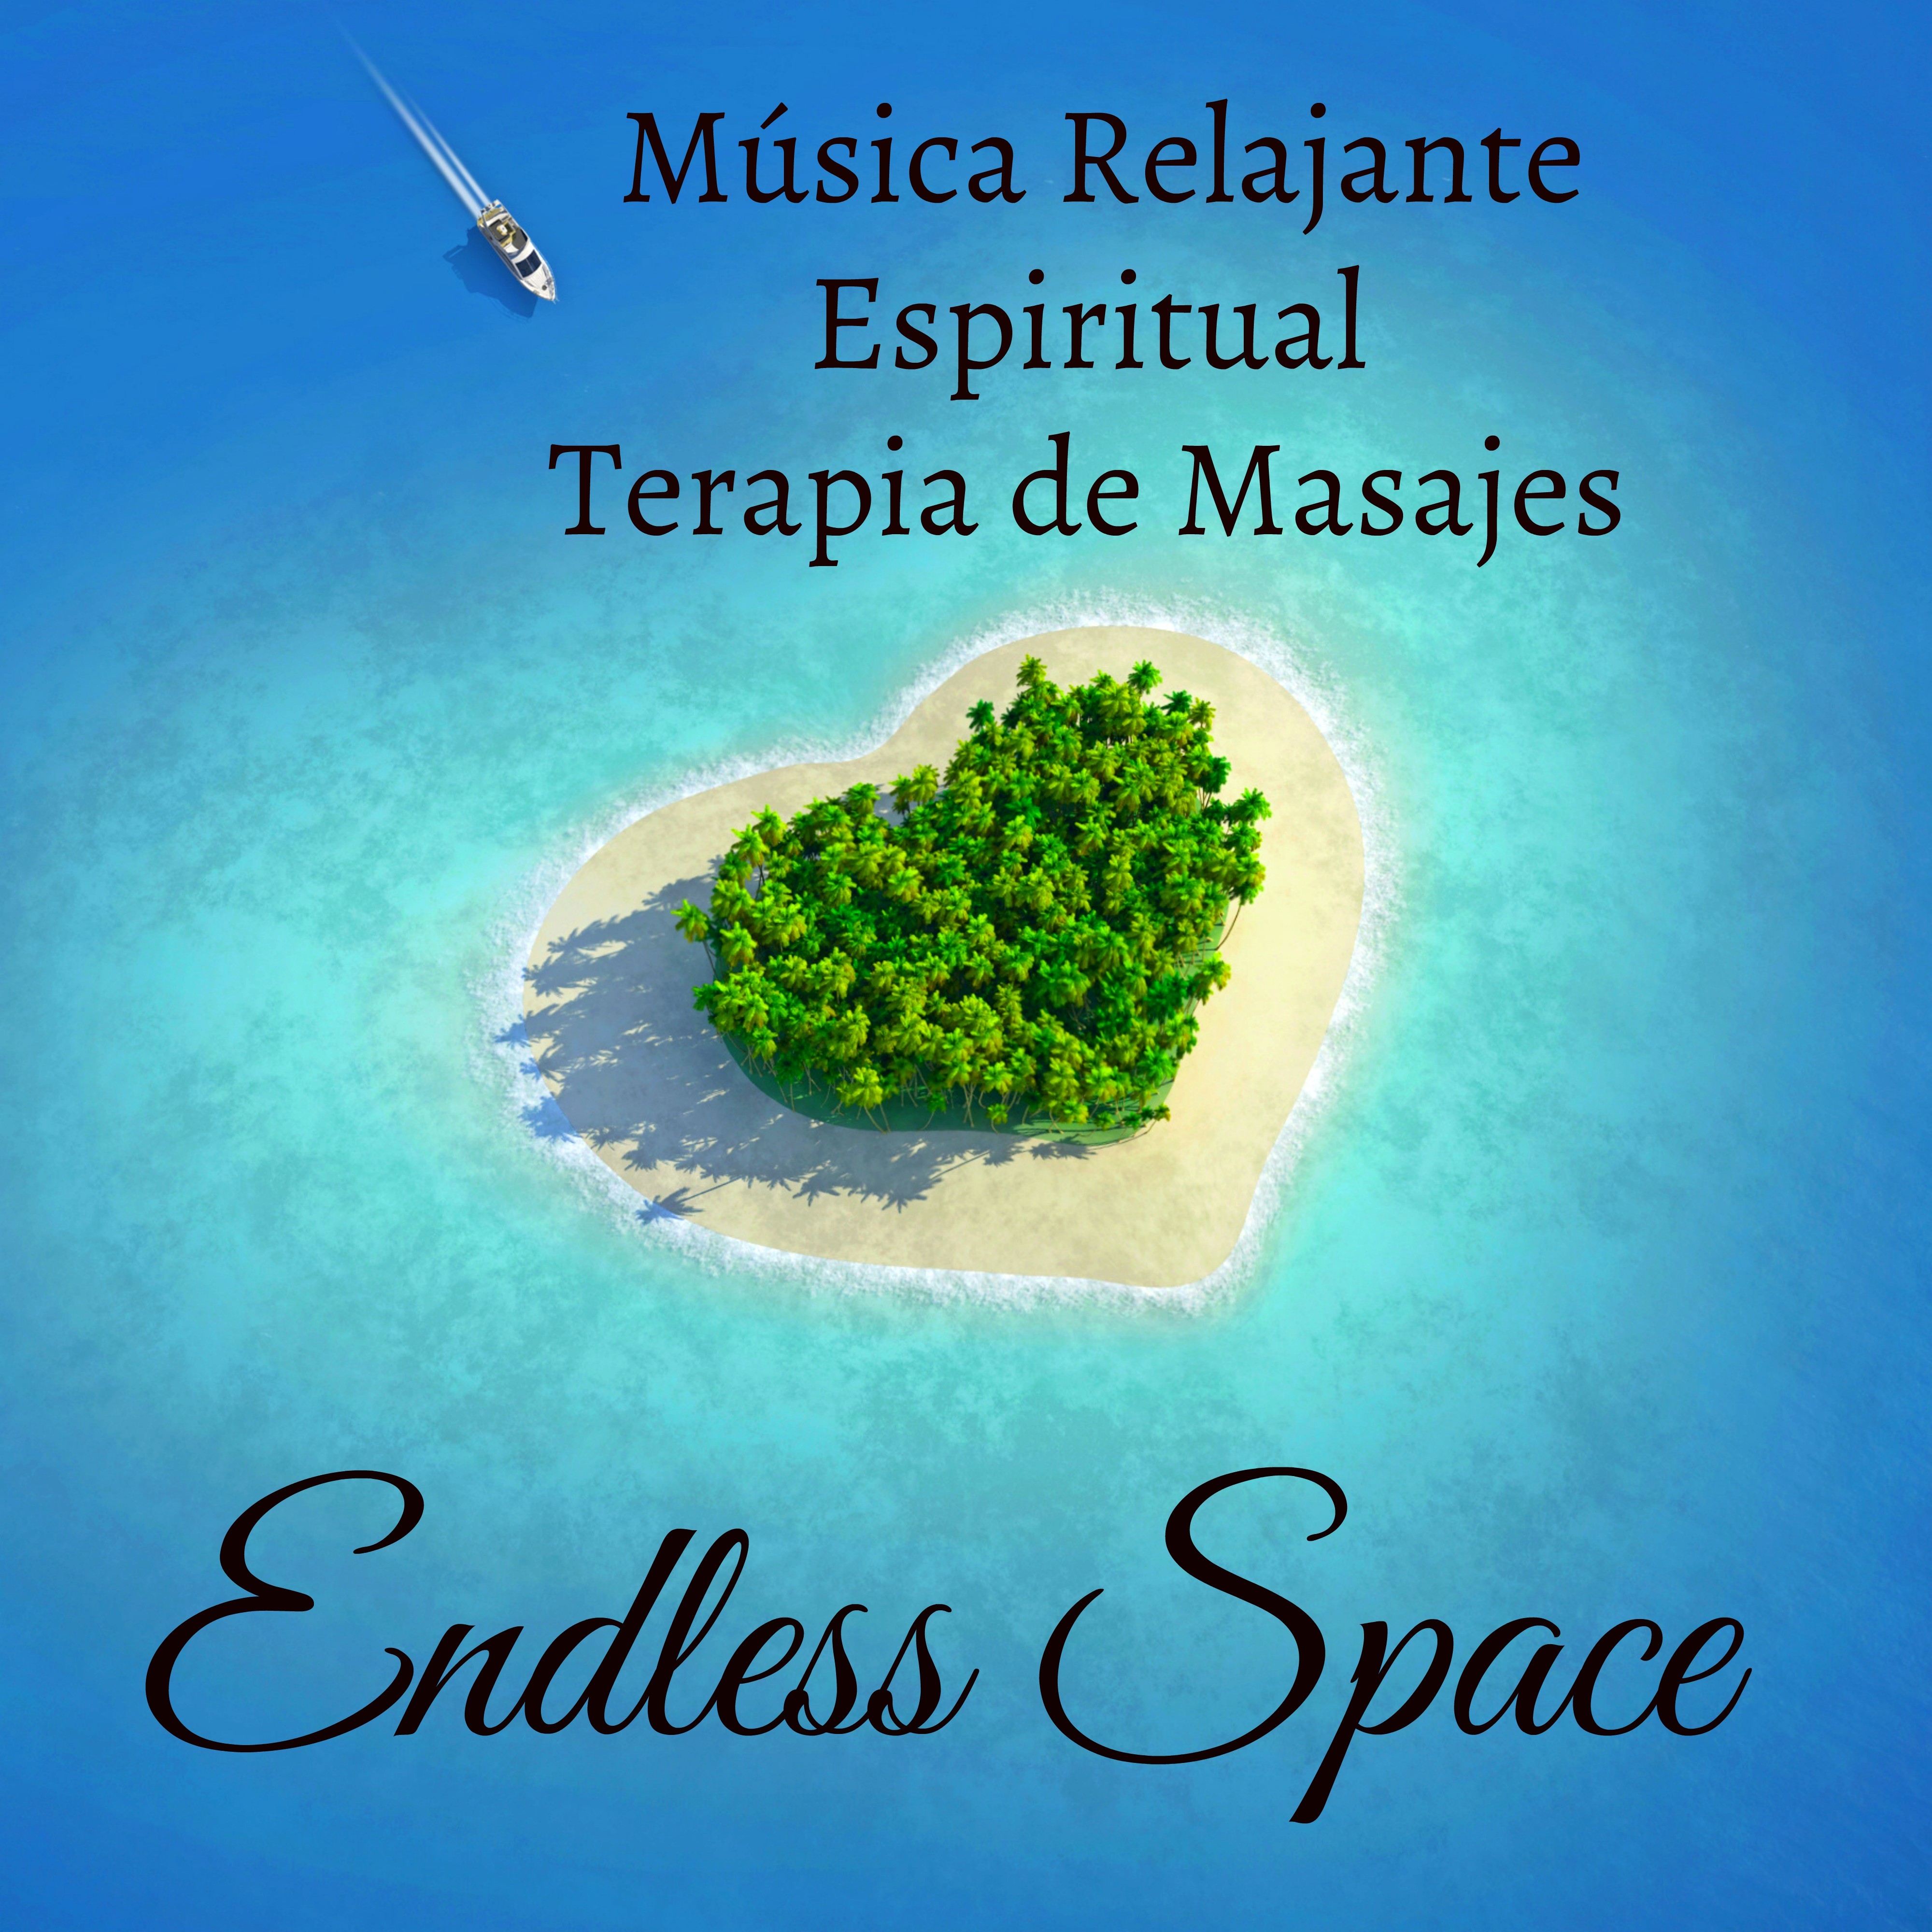 Endless Space  Mu sica Relajante Espiritual Terapia de Masajes con Sonidos de la Naturaleza Instrumentales y Binaurales